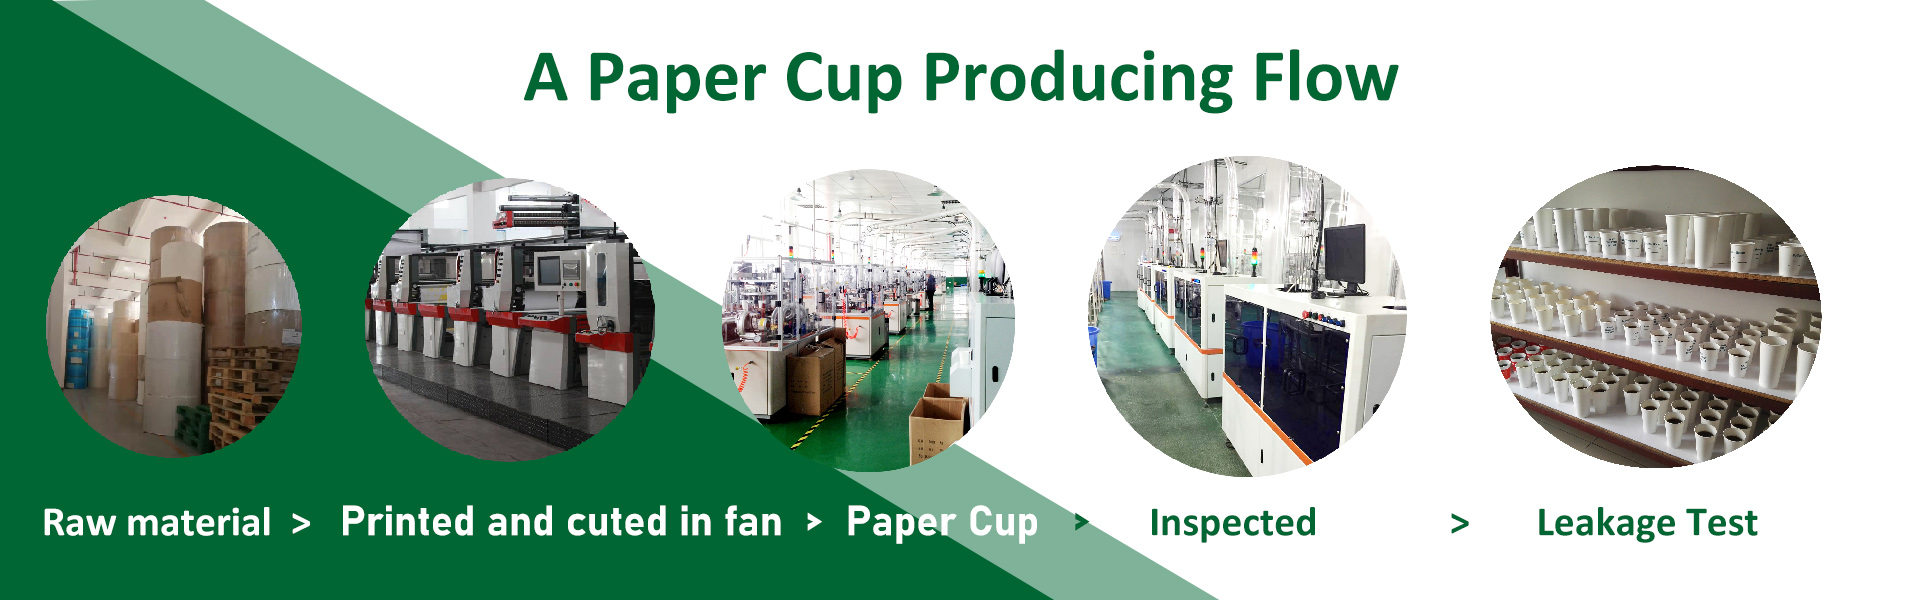 papírový kelímek, jednorázové papírové kelímky, papírové kelímky,xinhua paper cup factory